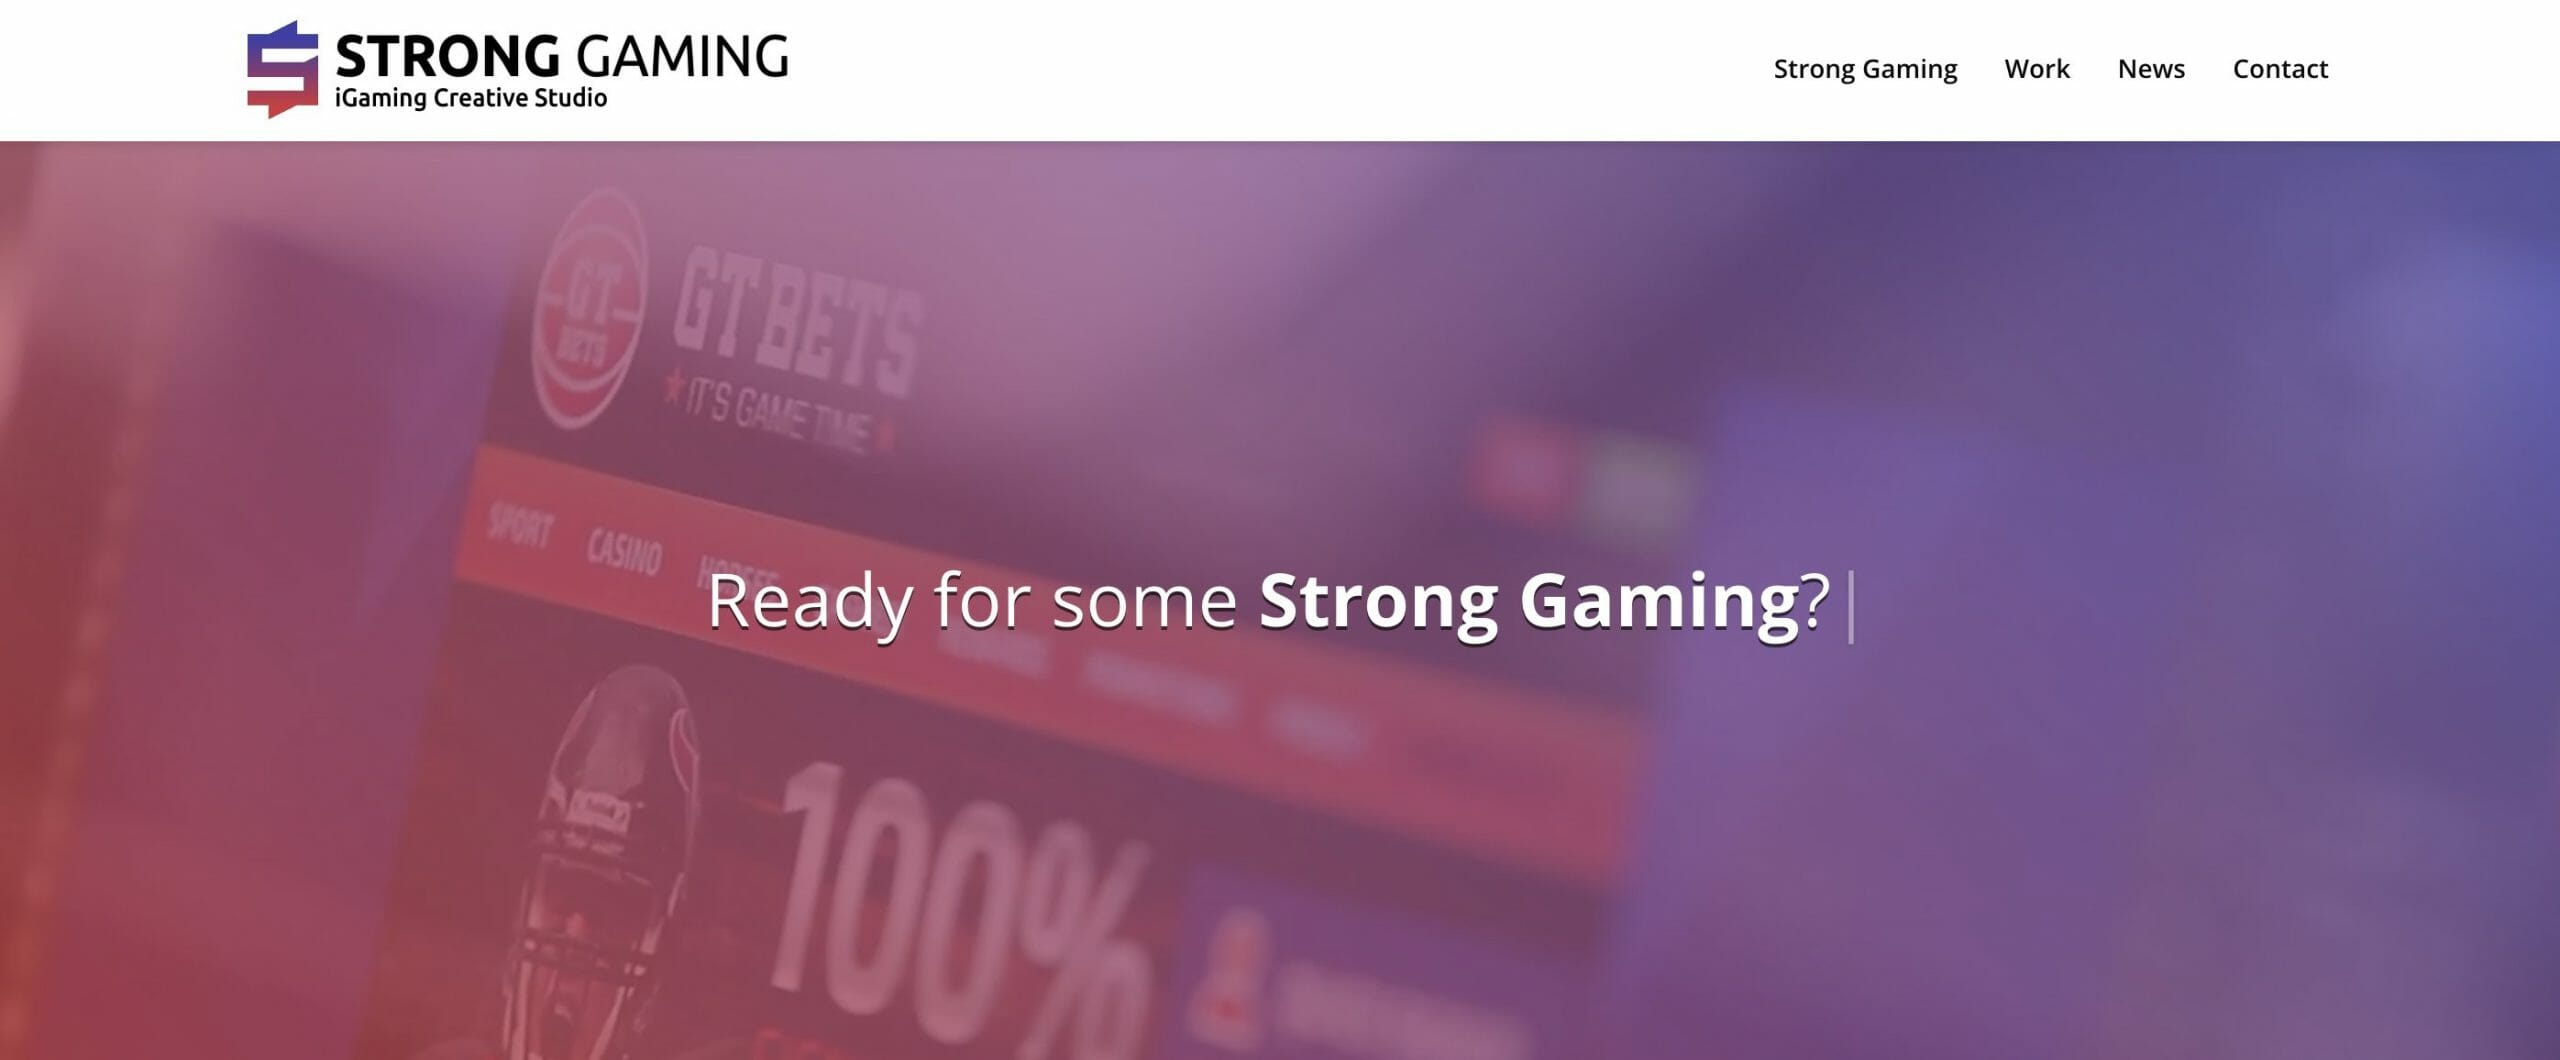 Strong Gaming